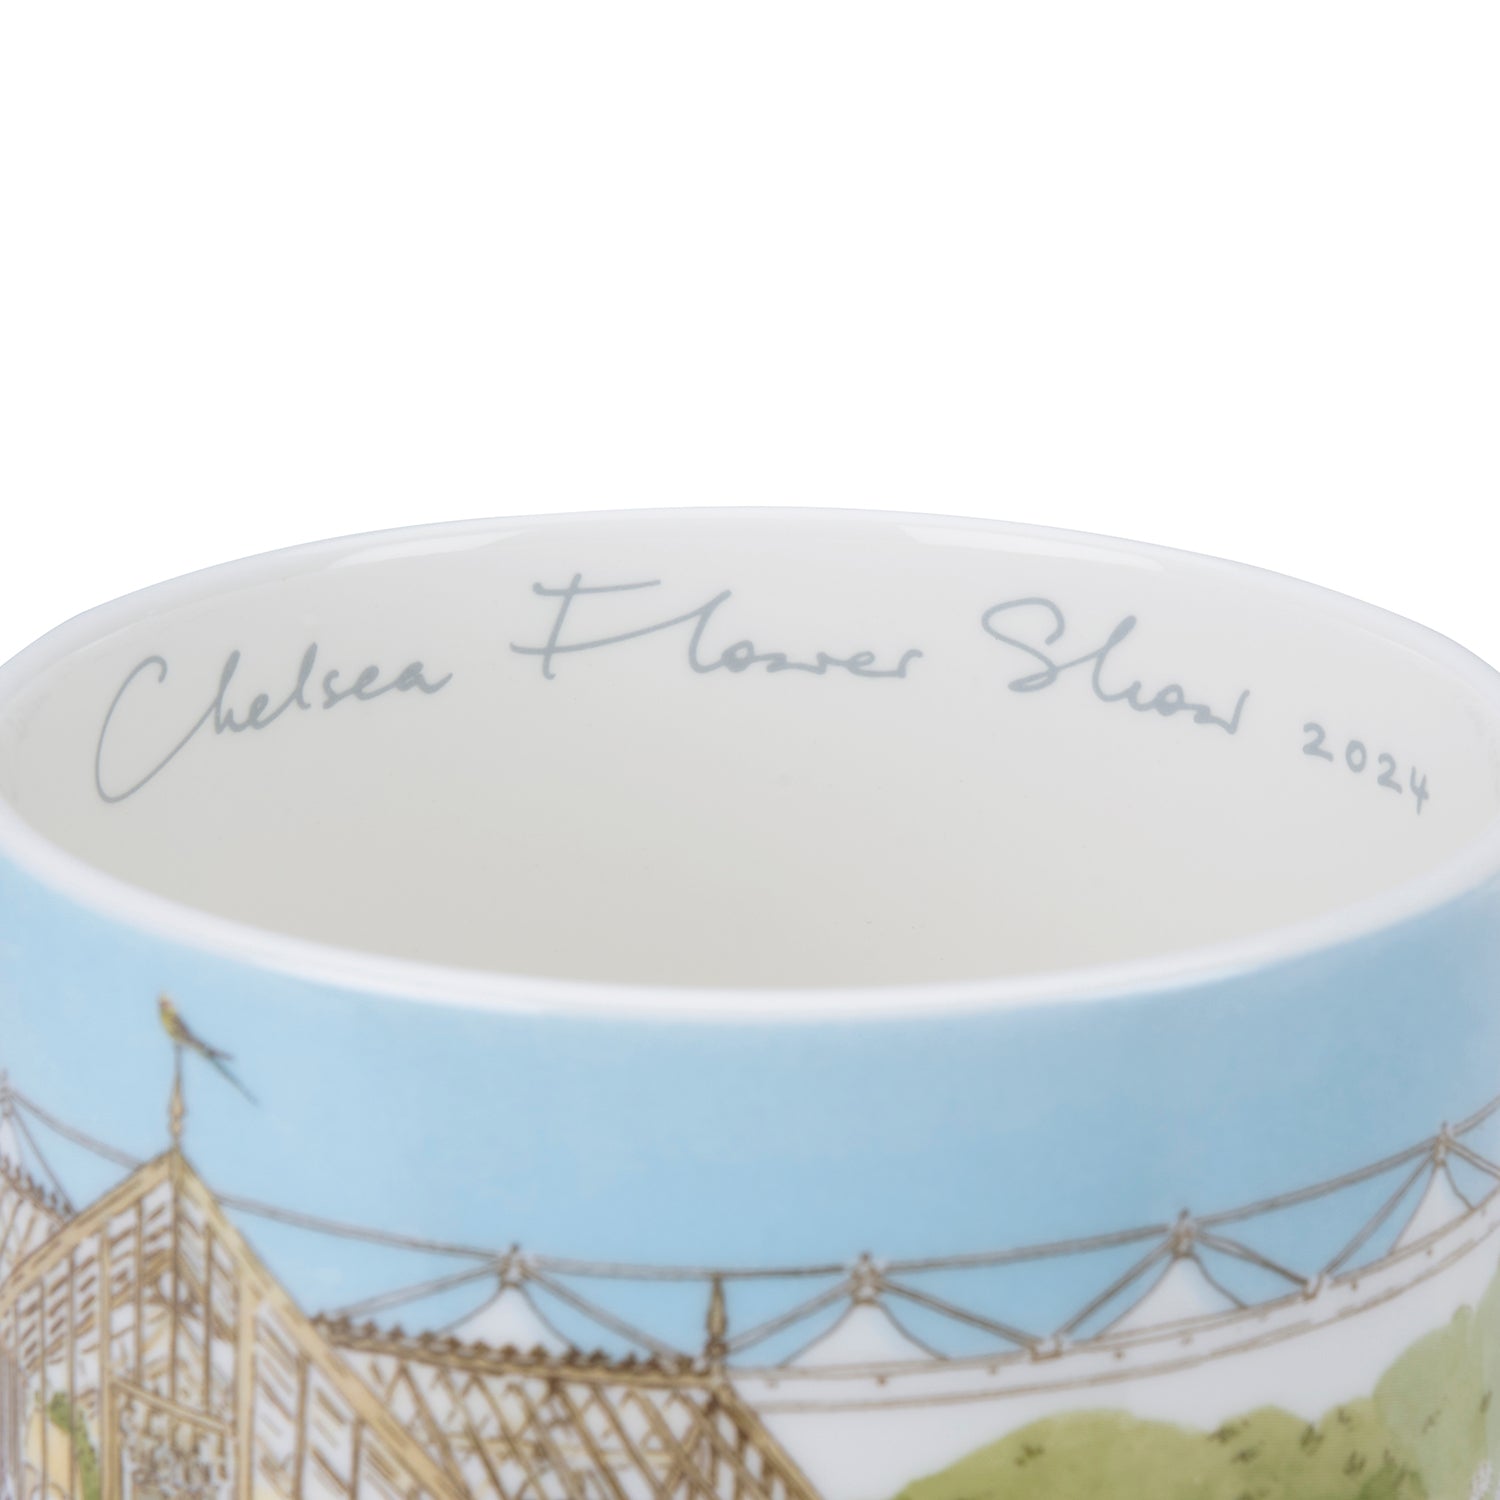 Chelsea Flower Show Mug (2024)